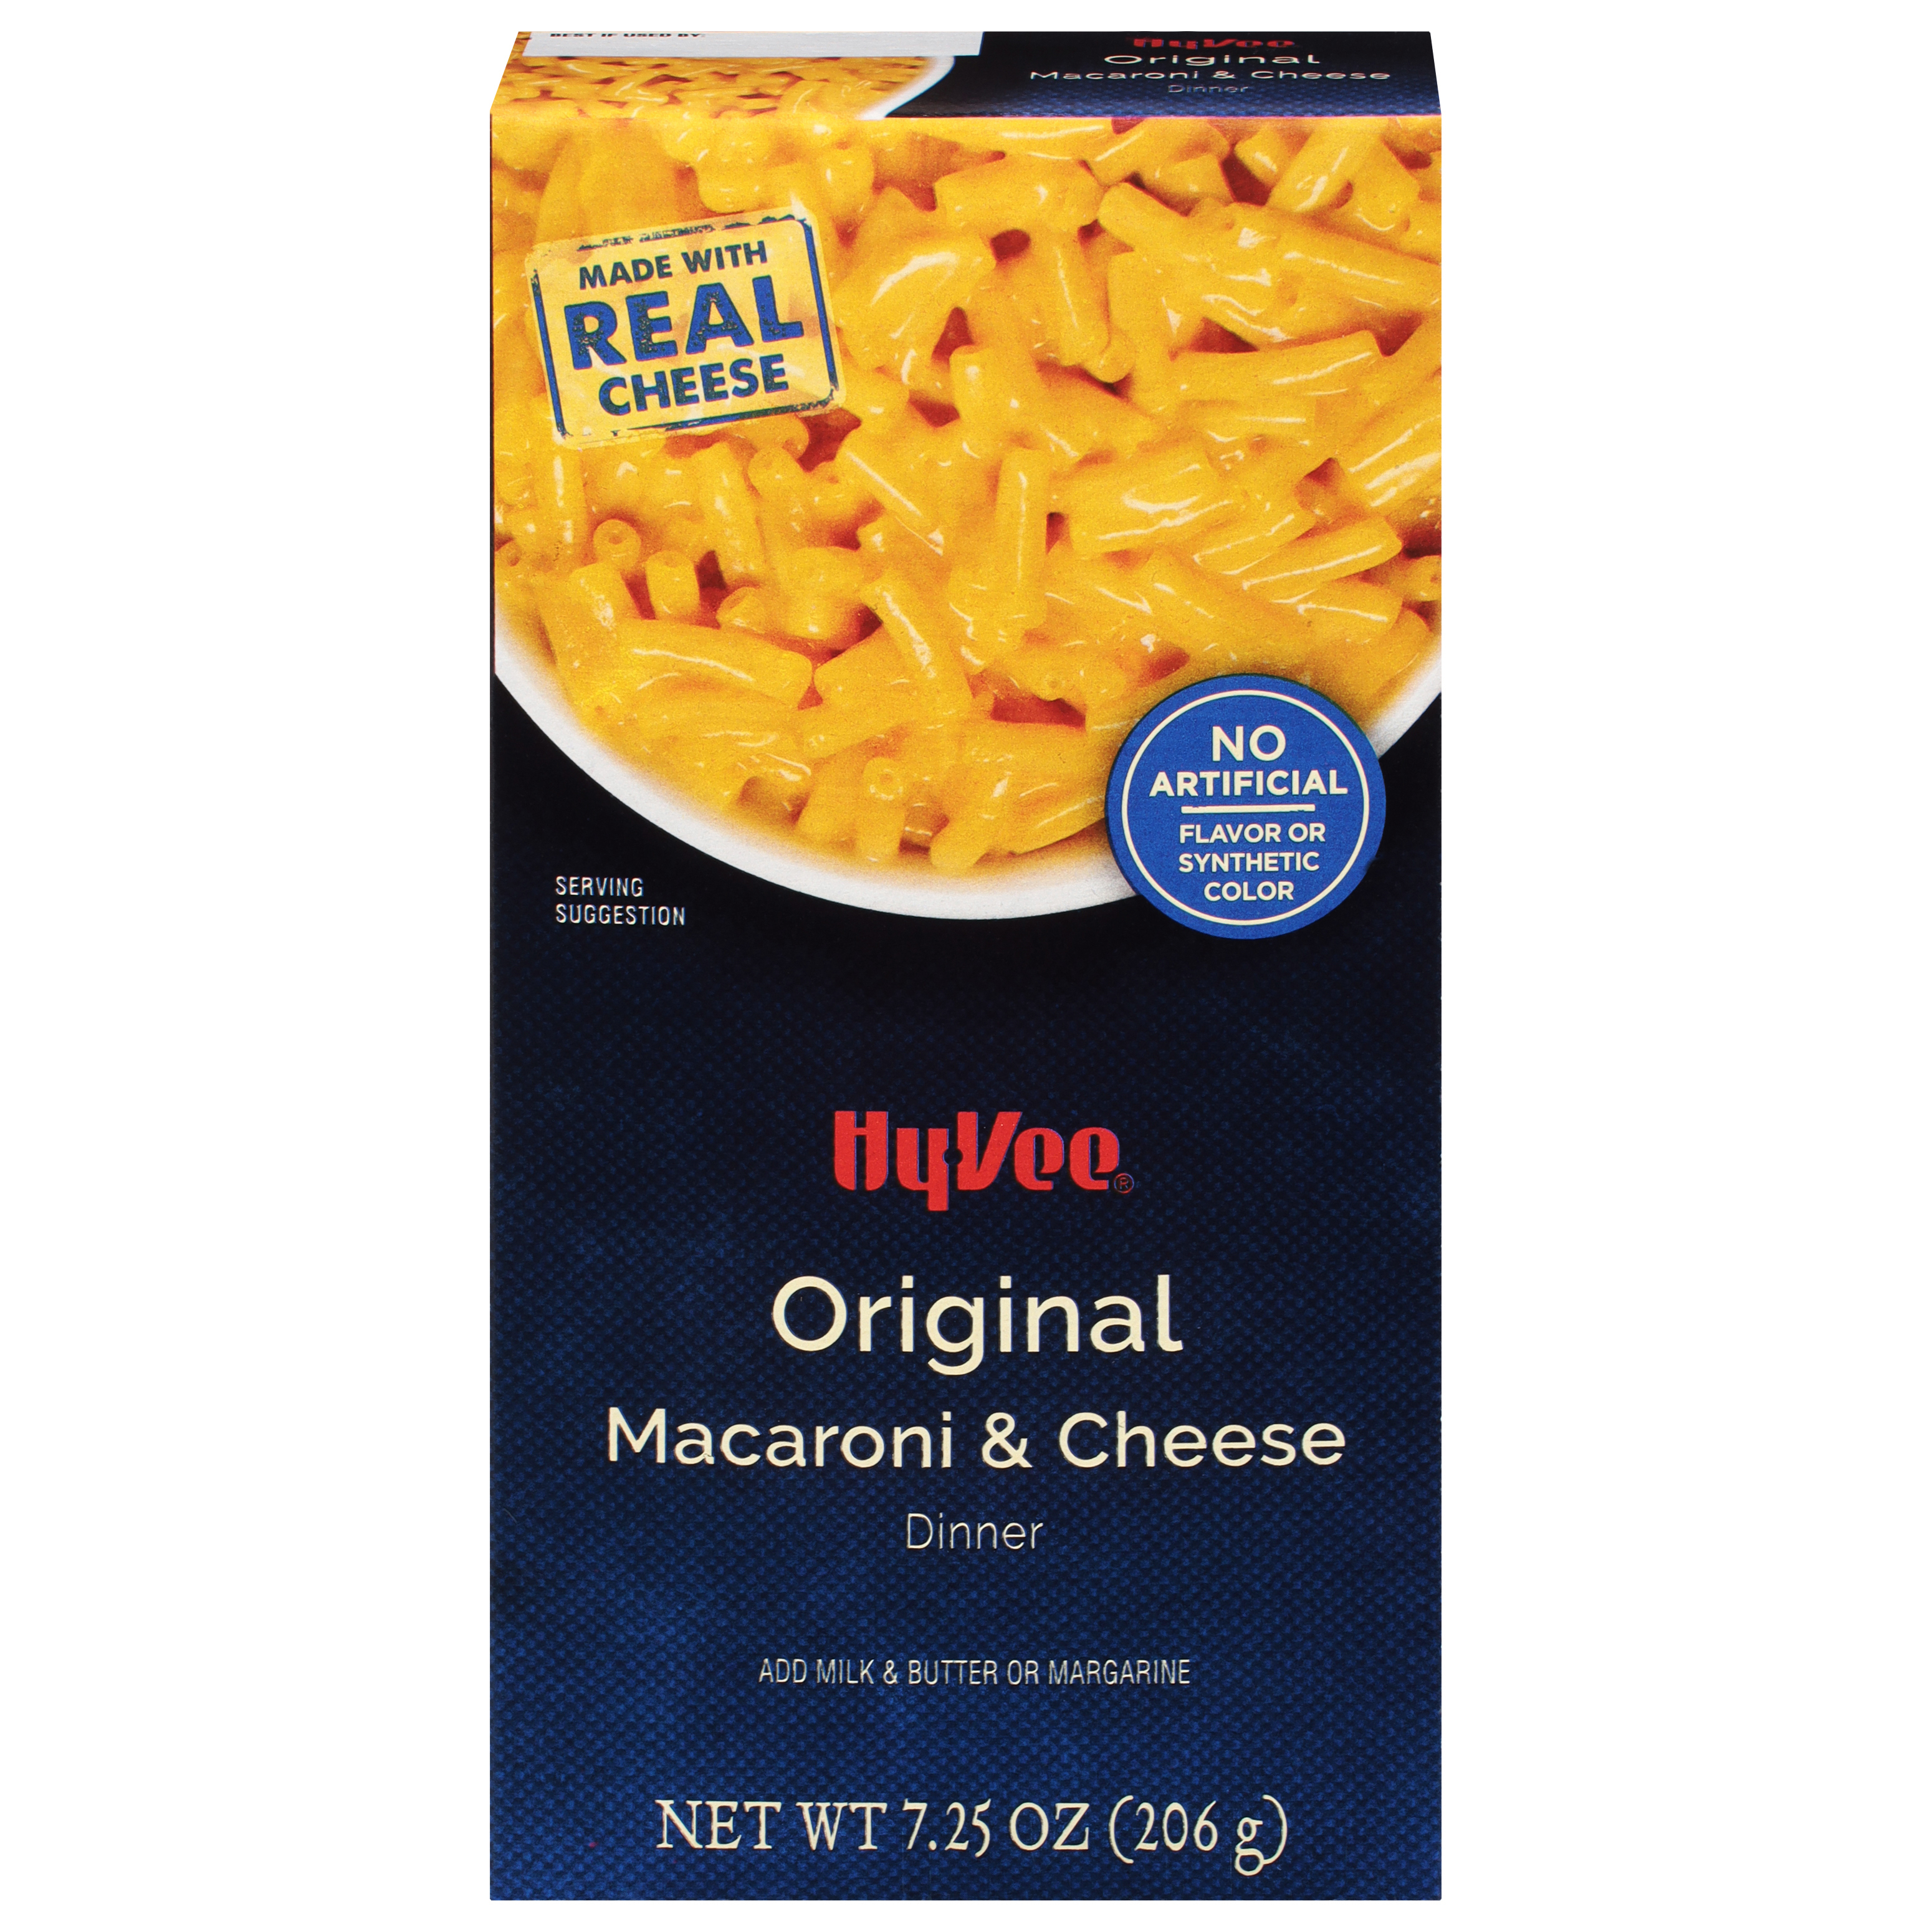 Original Macaroni & Cheese Dinner